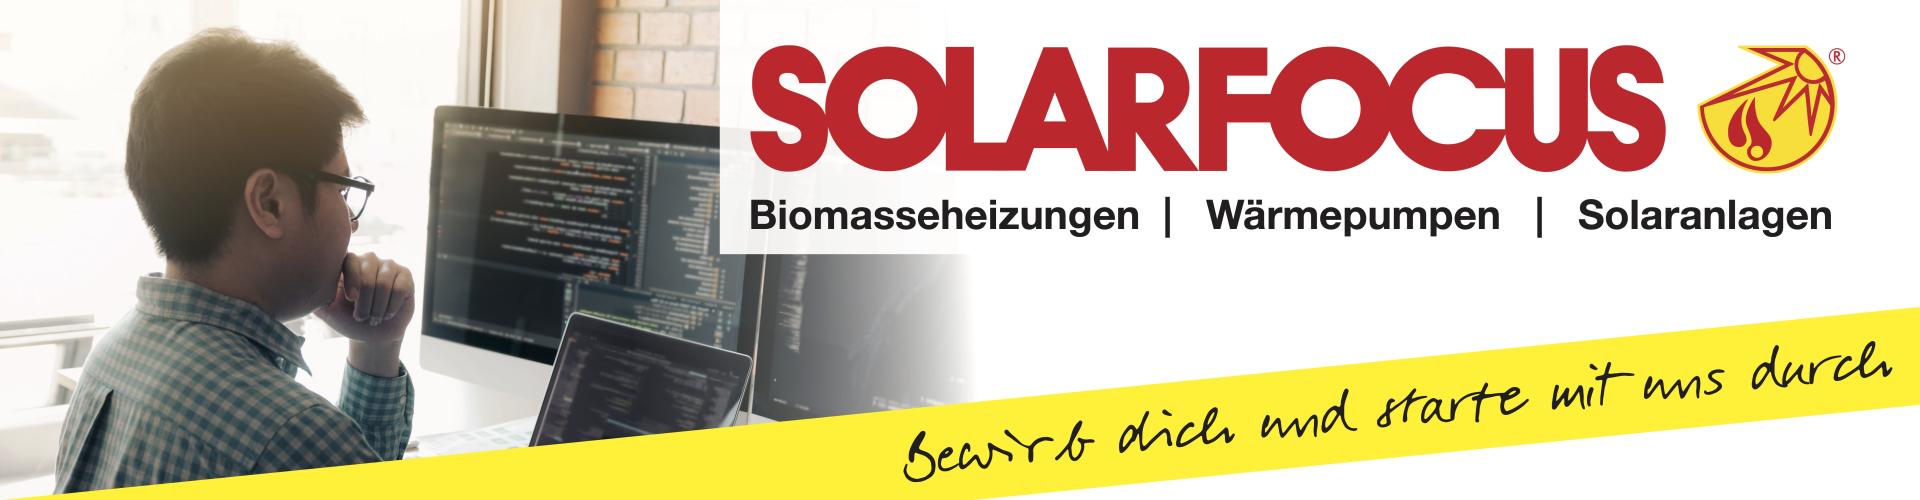 Solarfocus GmbH cover